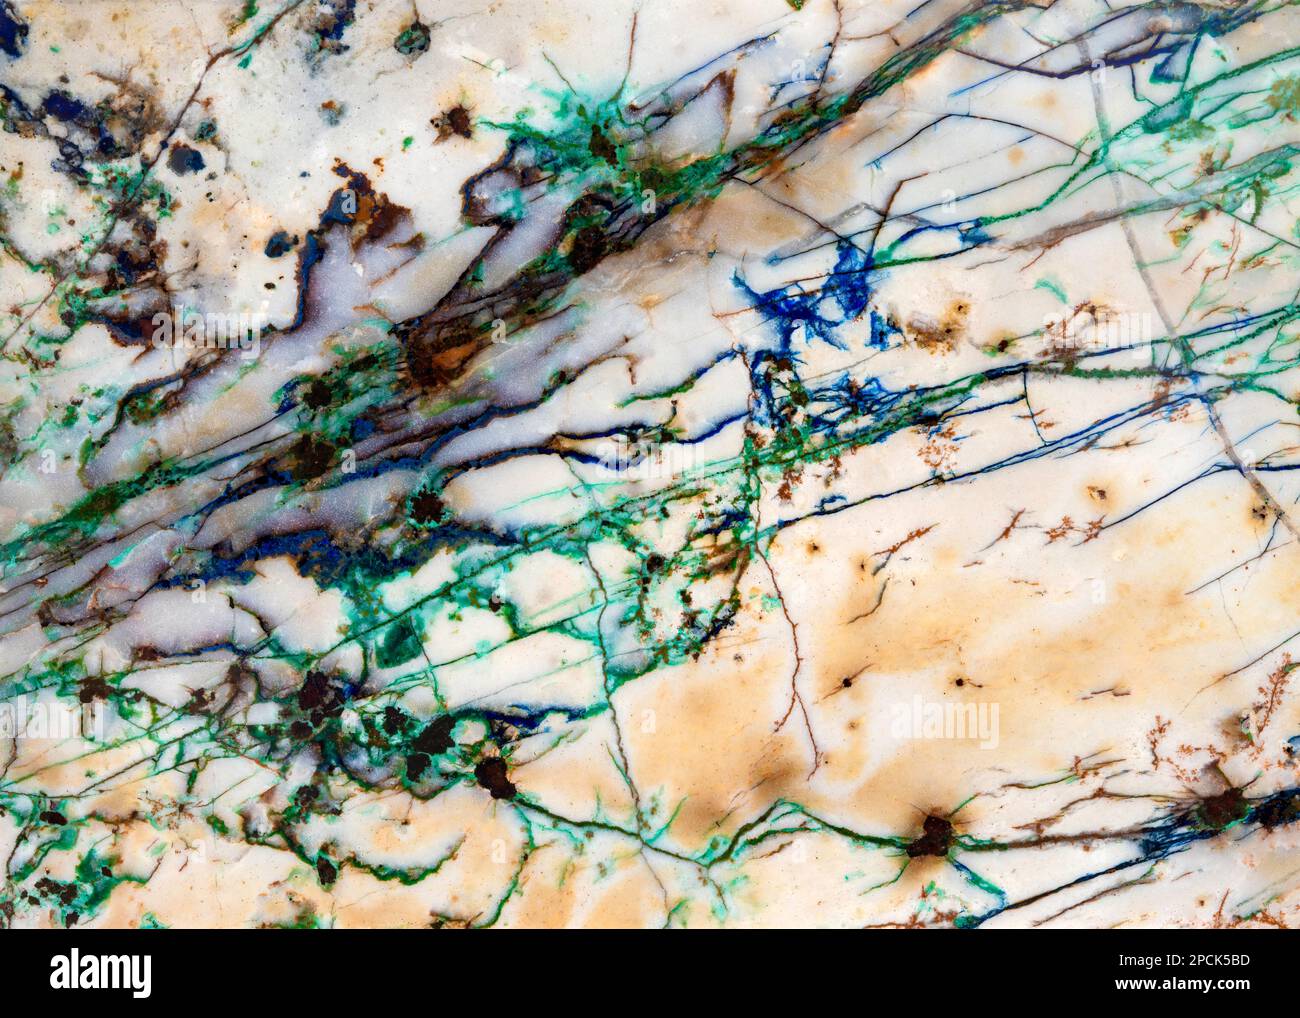 Dettaglio dei filoni di minerale in esecuzione attraverso una fetta del rock. Il blu e il verde sono Azurite e Malachite rispettivamente. Foto Stock